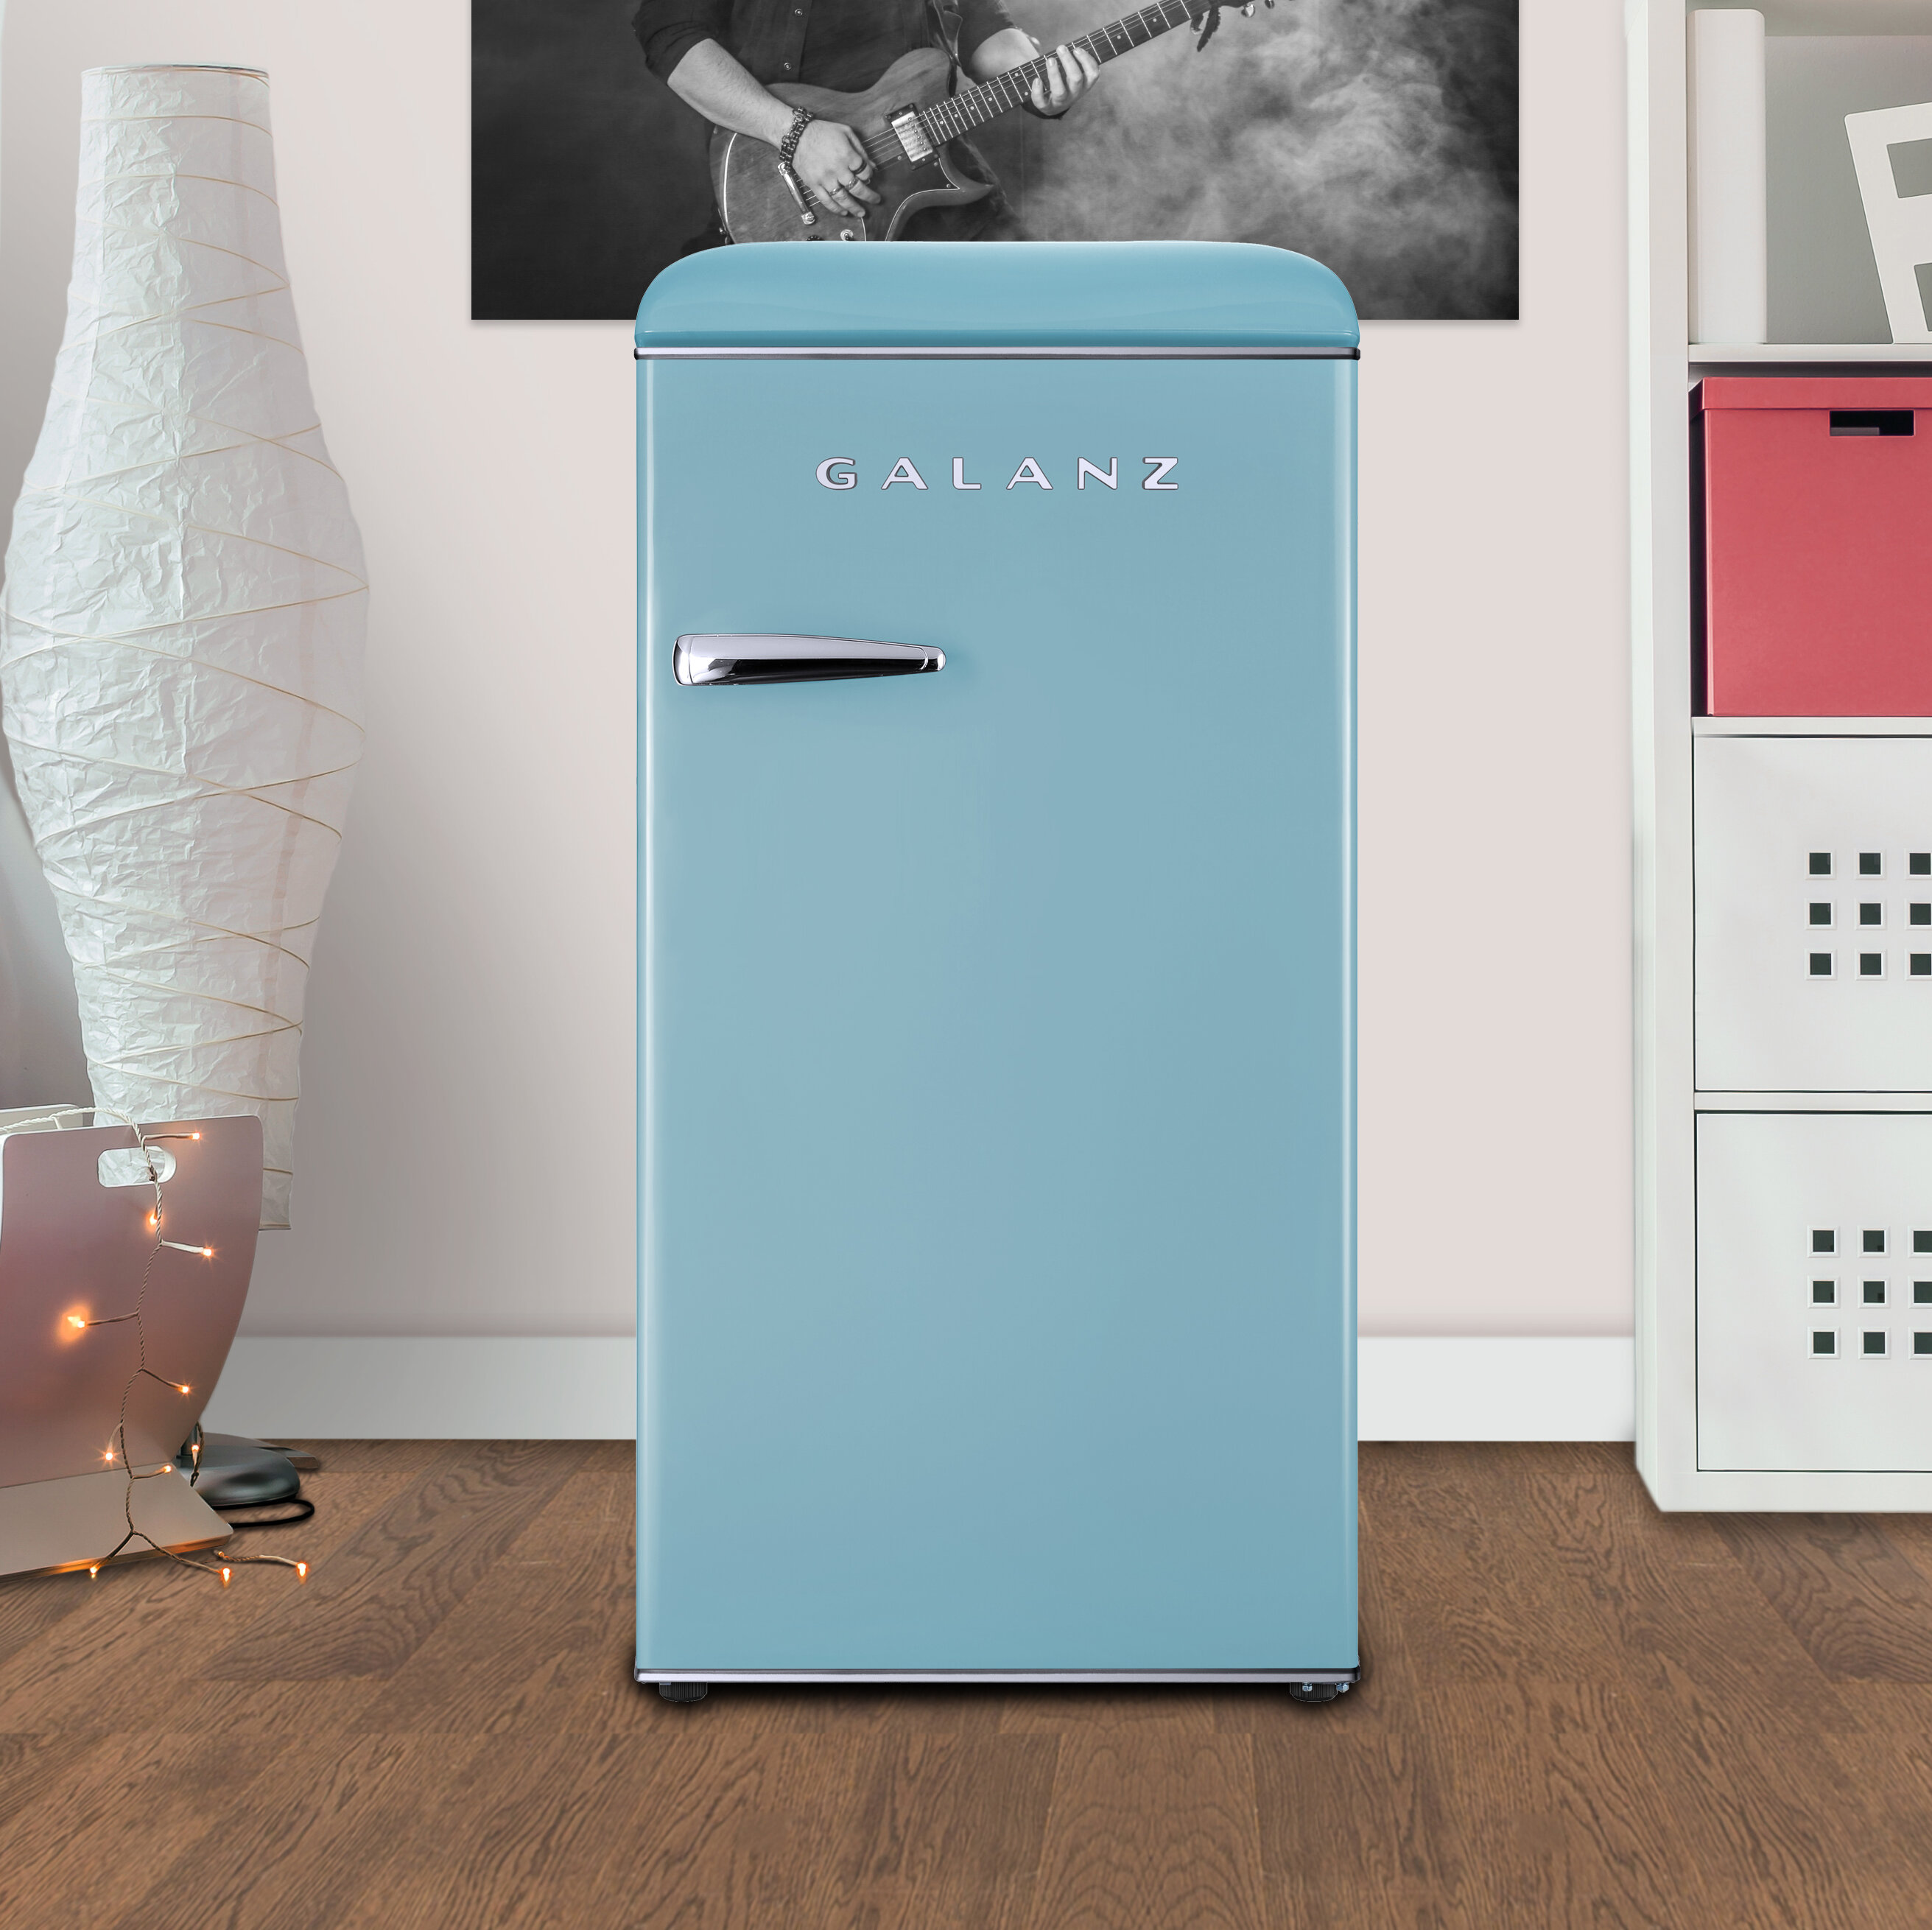 https://assets.wfcdn.com/im/72064139/compr-r85/1268/126816421/galanz-retro-33-cubic-feet-freestanding-mini-fridge-with-freezer.jpg